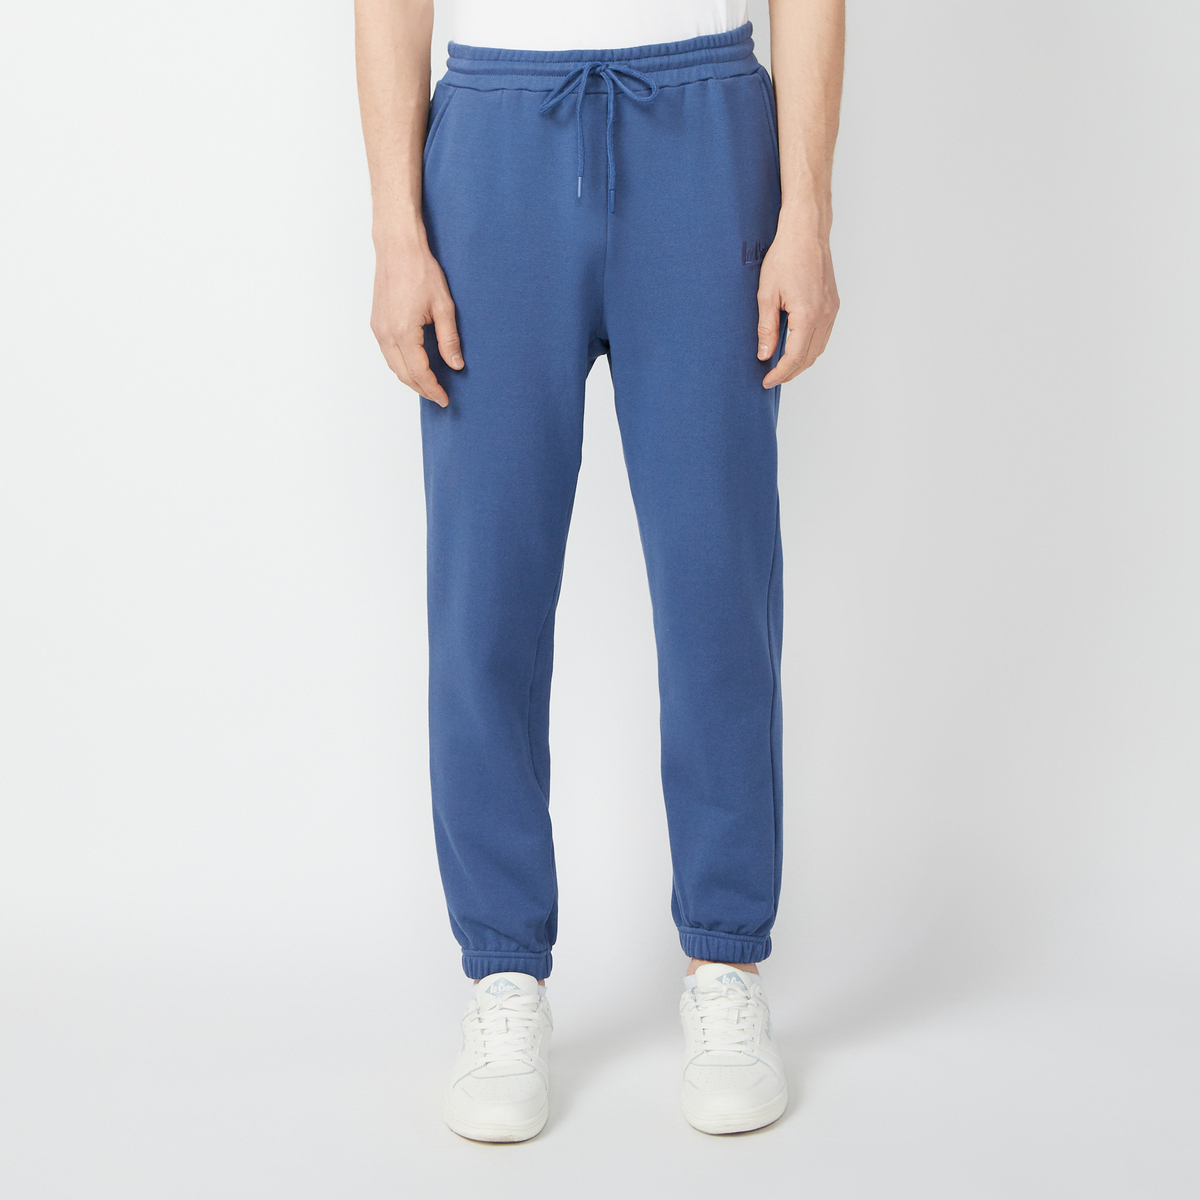 Спортивные брюки мужские Lee cooper LC-SWP-337MSS синие XXL